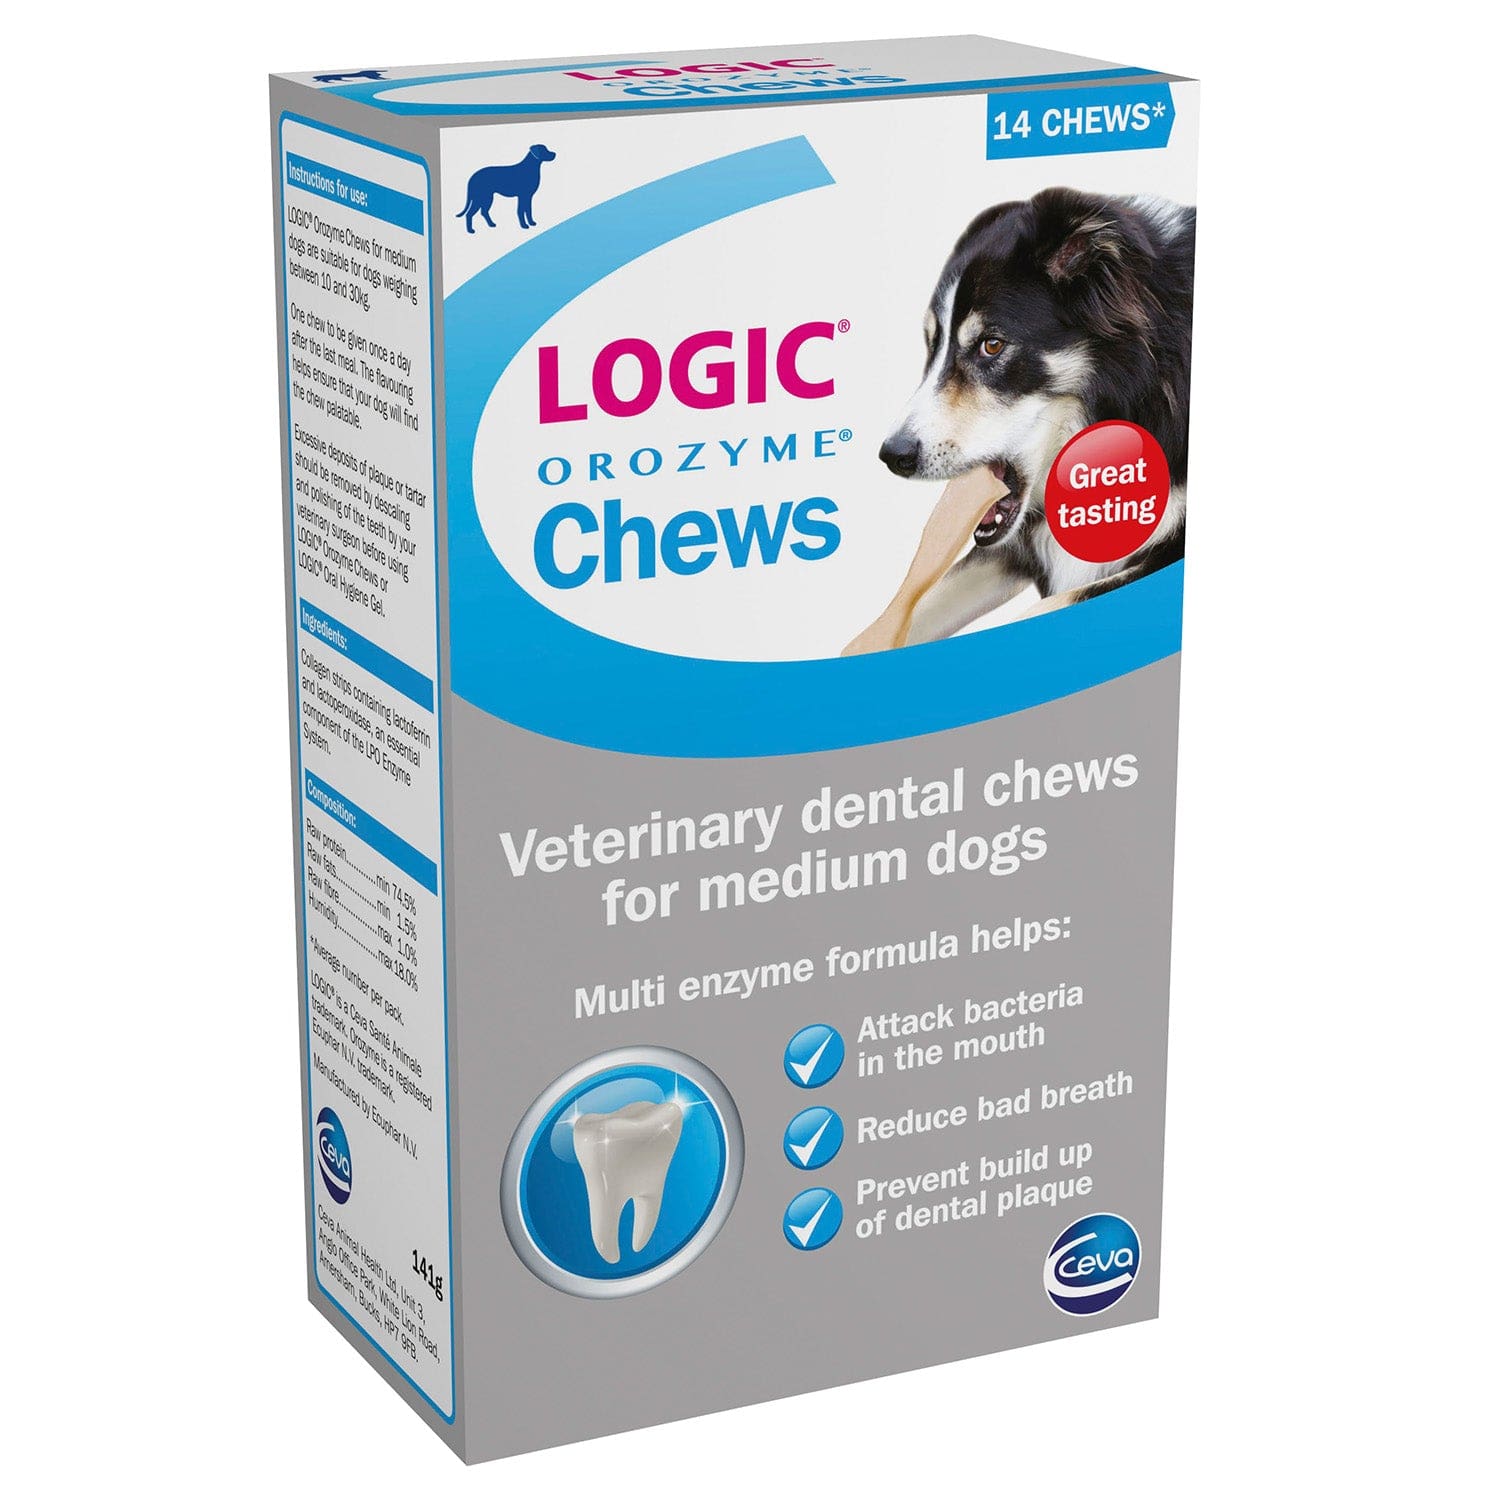 Logic orozyme chews for medium dogs